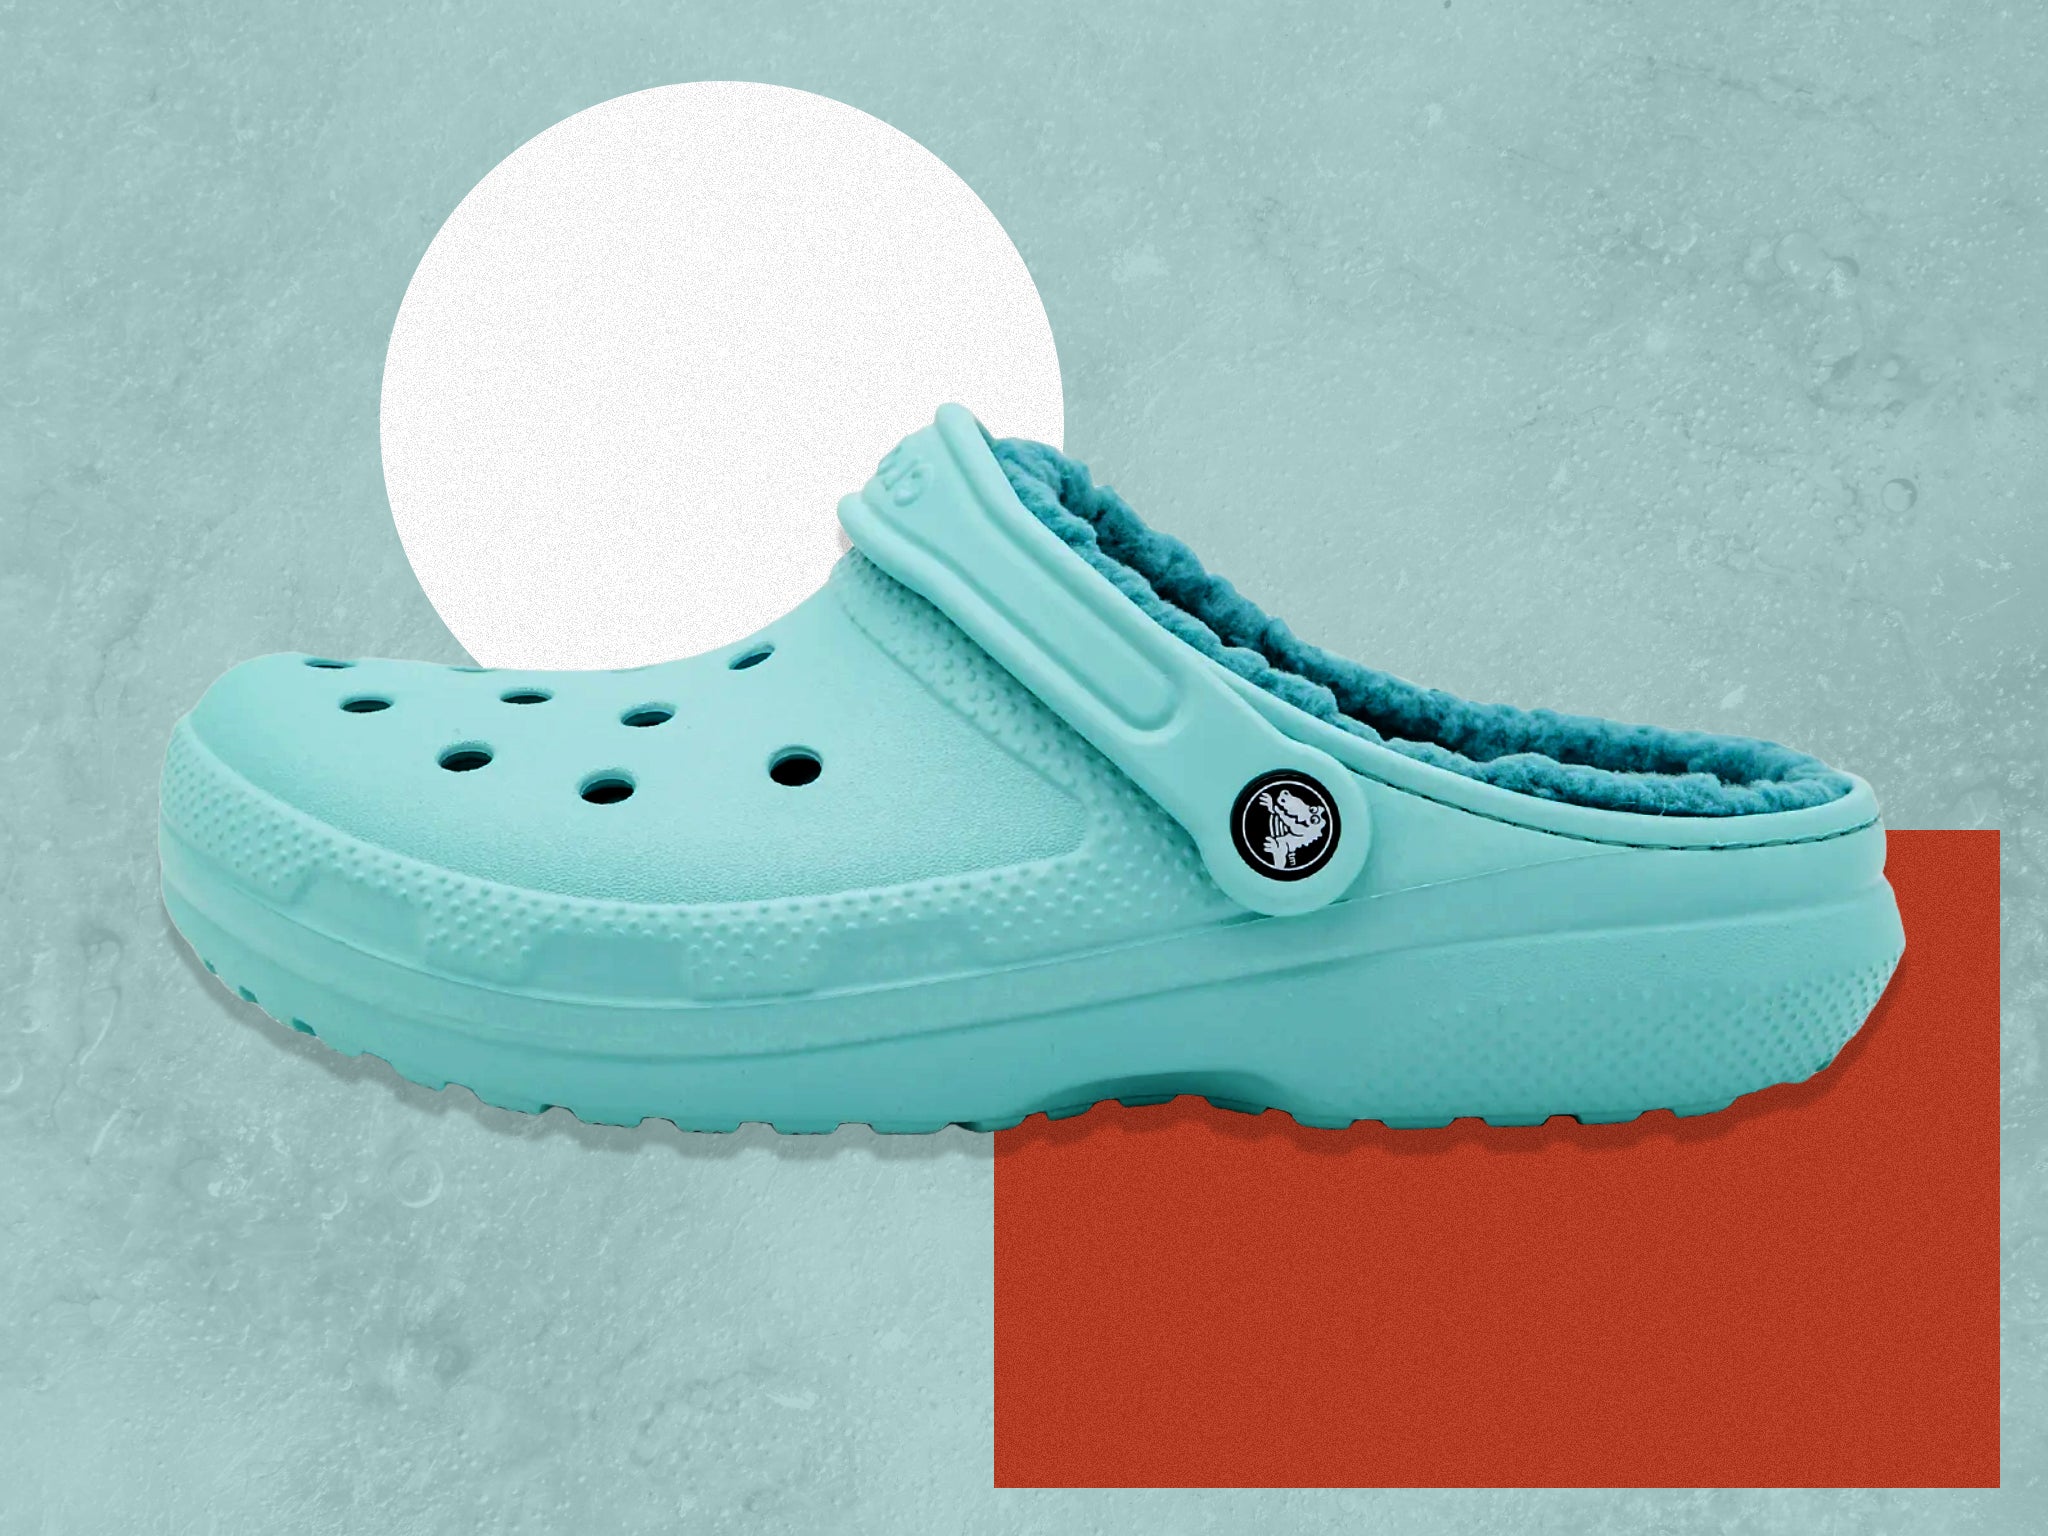 23 Crocs ideas  crocs, crocs shoes, shoes